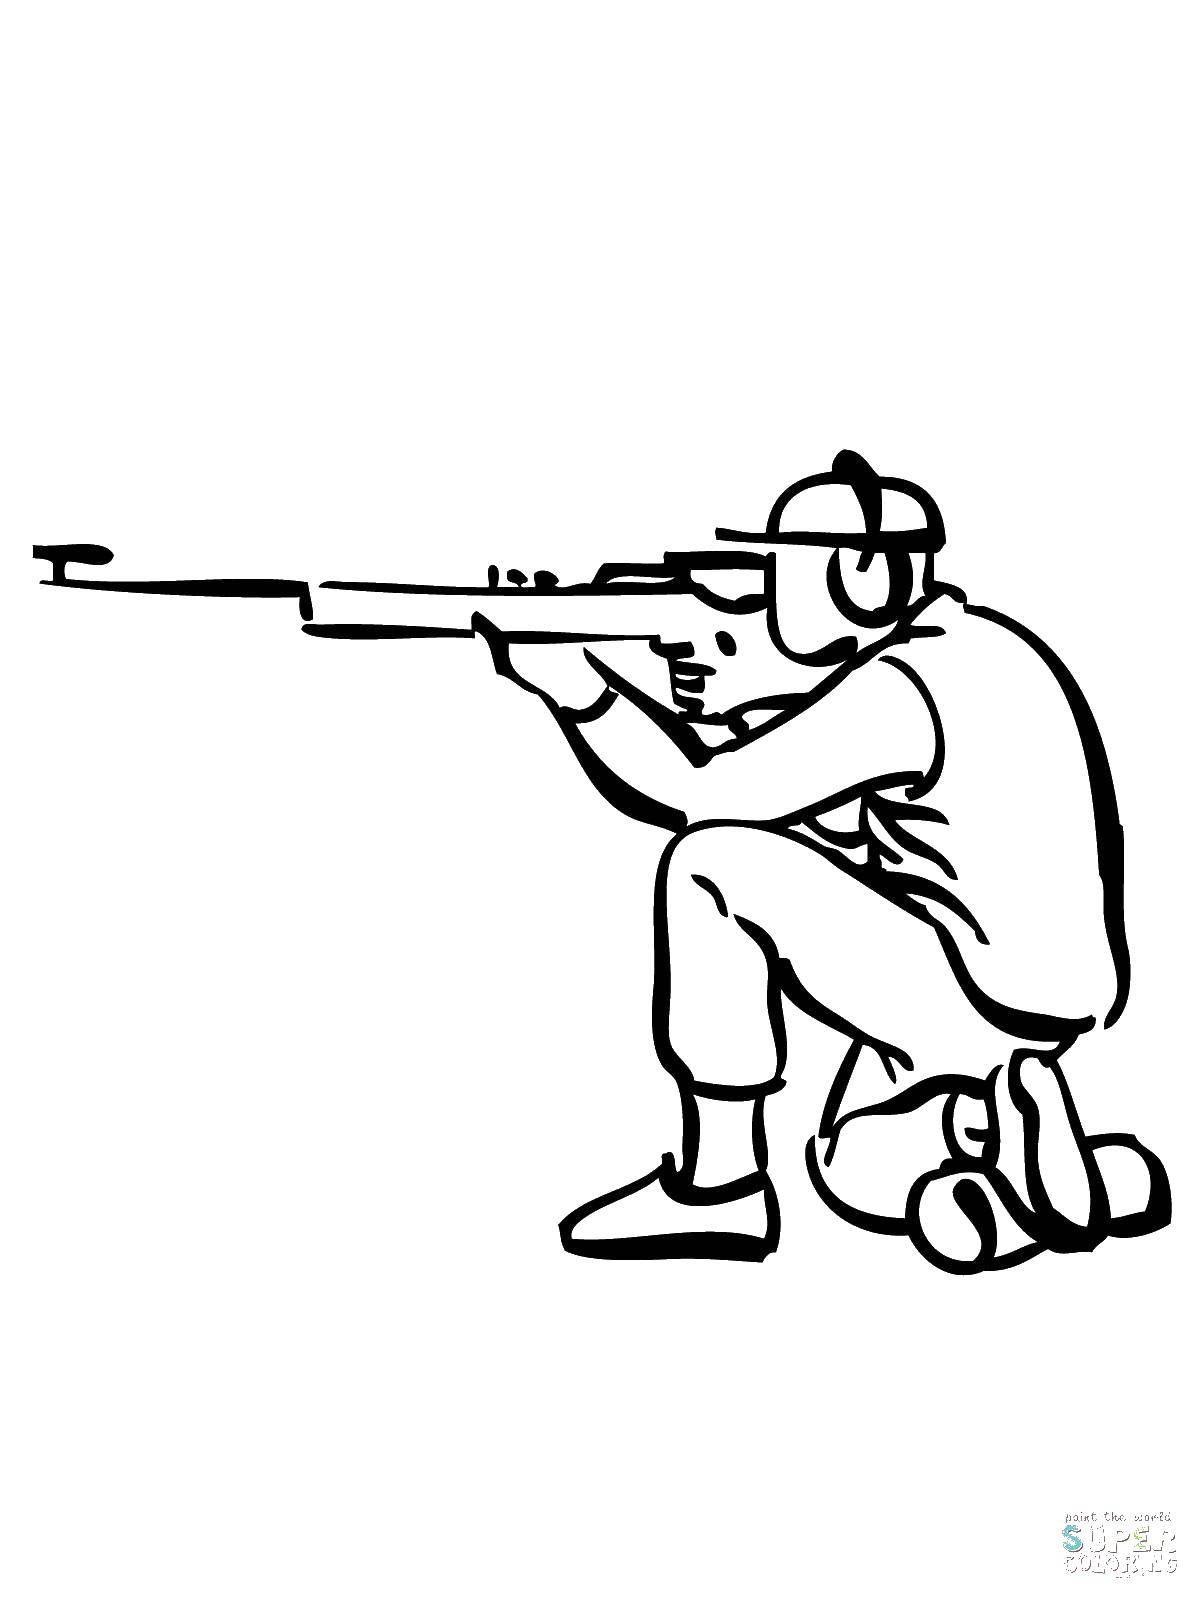 Название: Раскраска Снайпер. Категория: военные раскраски. Теги: снайпер, винтовка.